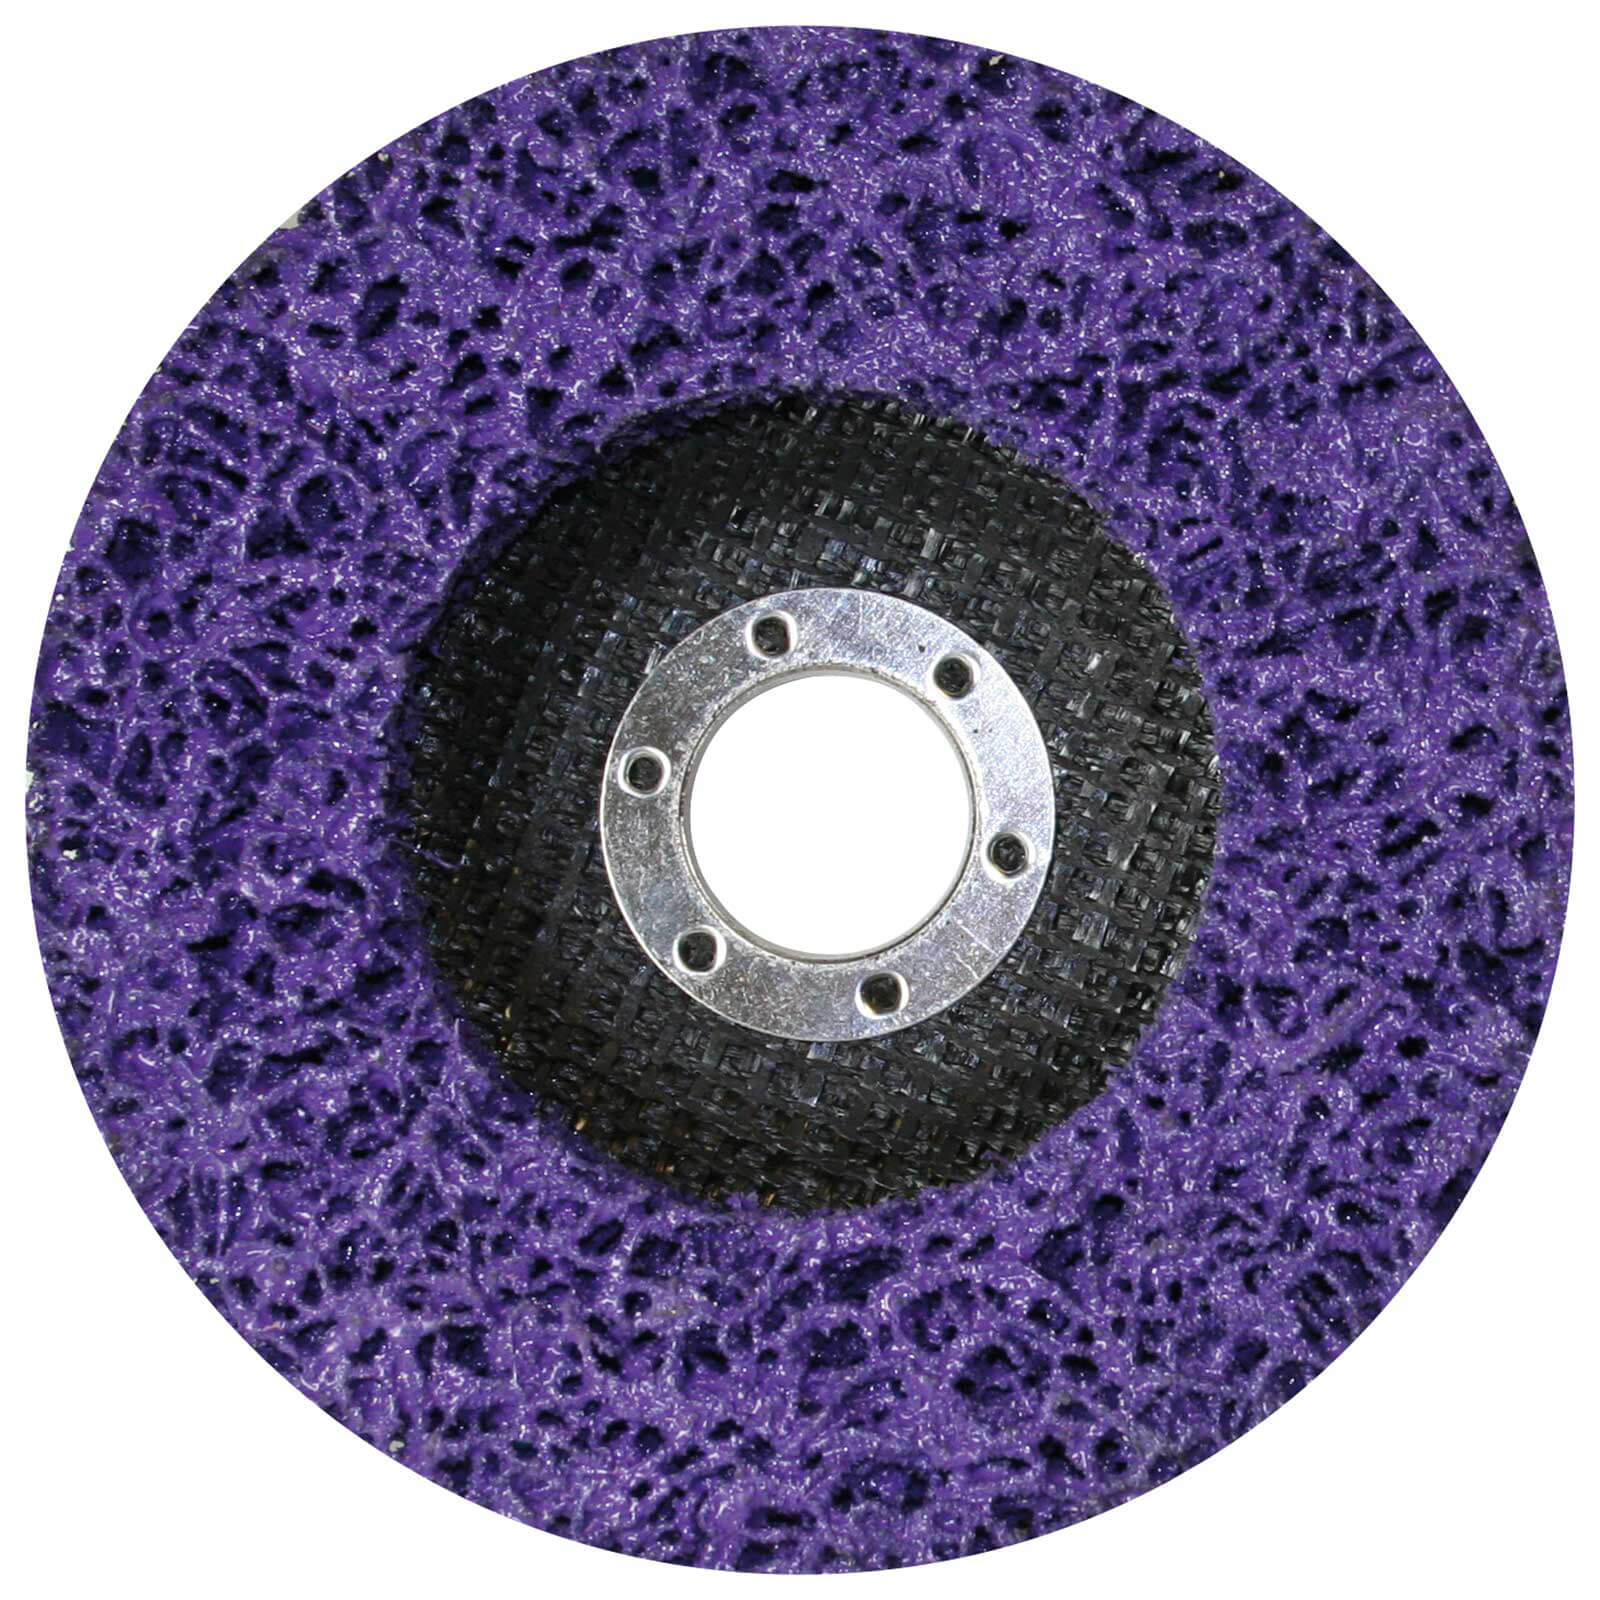 Image of Makita Silicon Carbide Fibre Mesh Strip Disc 115mm